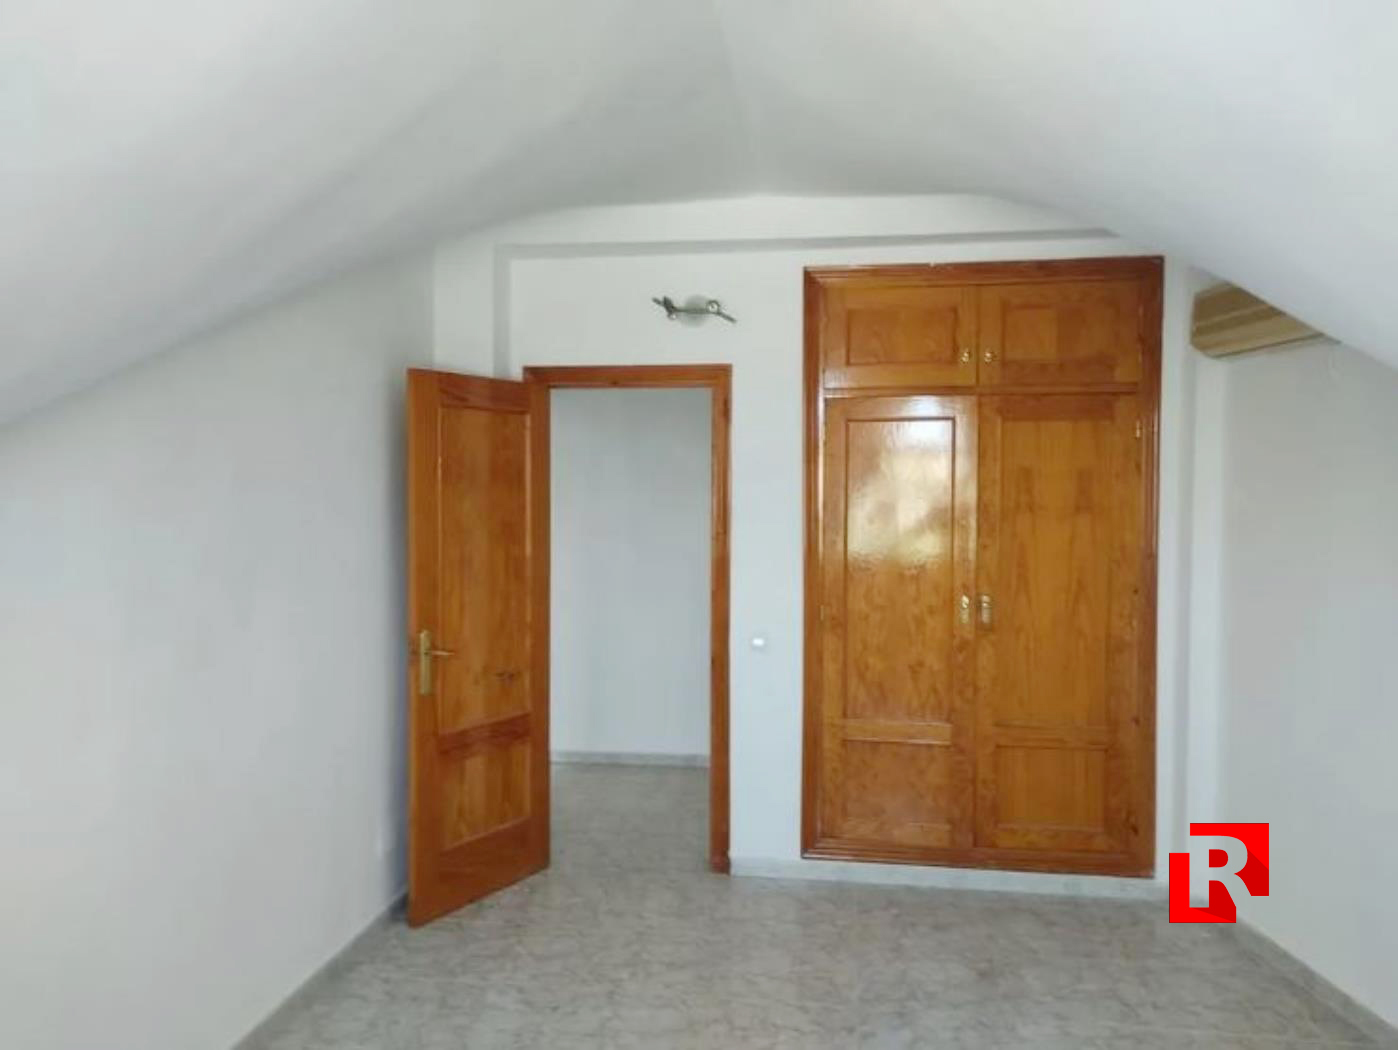 Apartment for sale in Arboleas ALMERIA